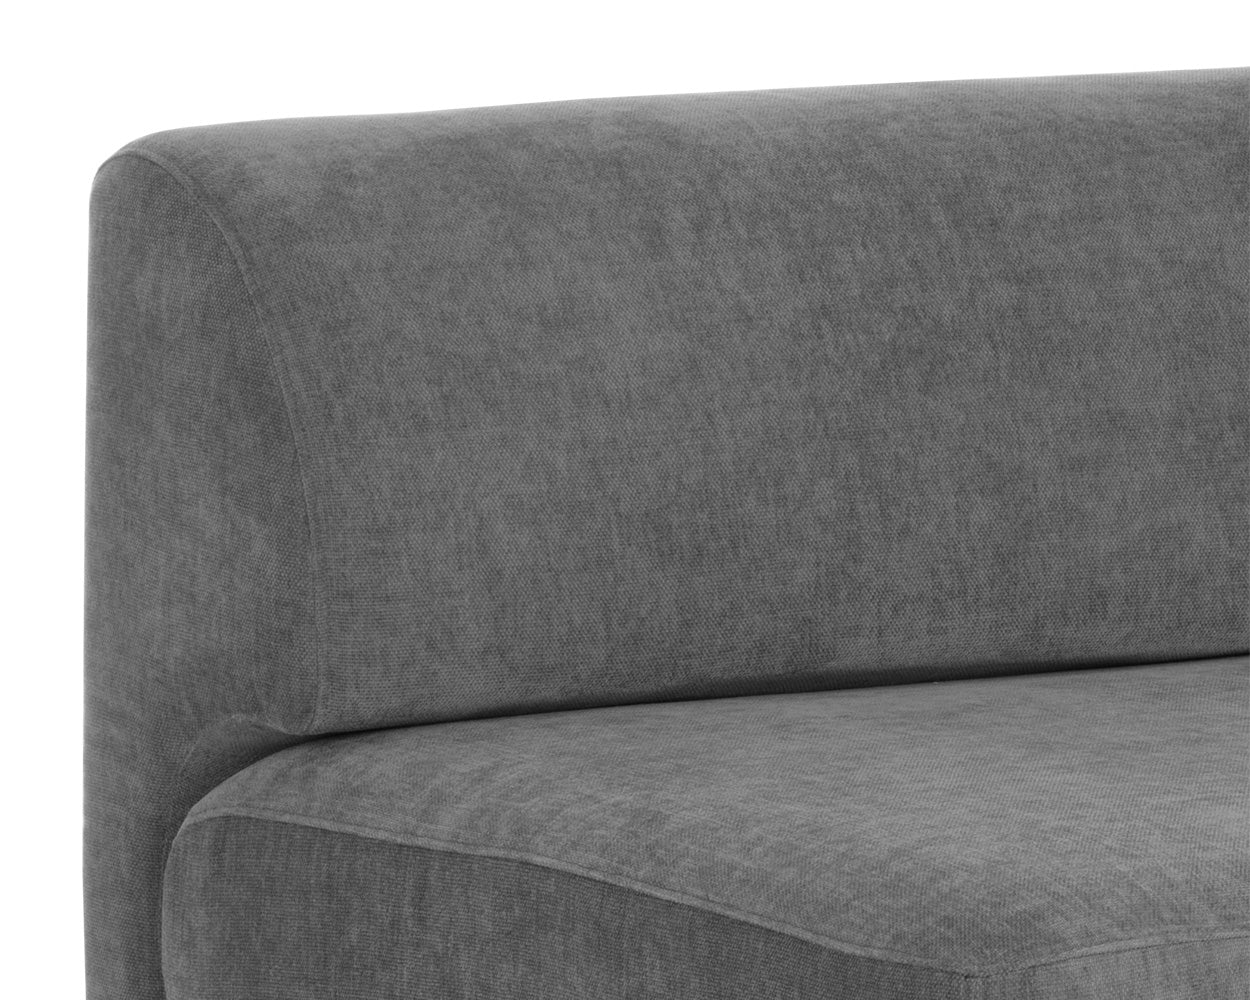 Harmony Modular - Armless Chair - Right Shelf